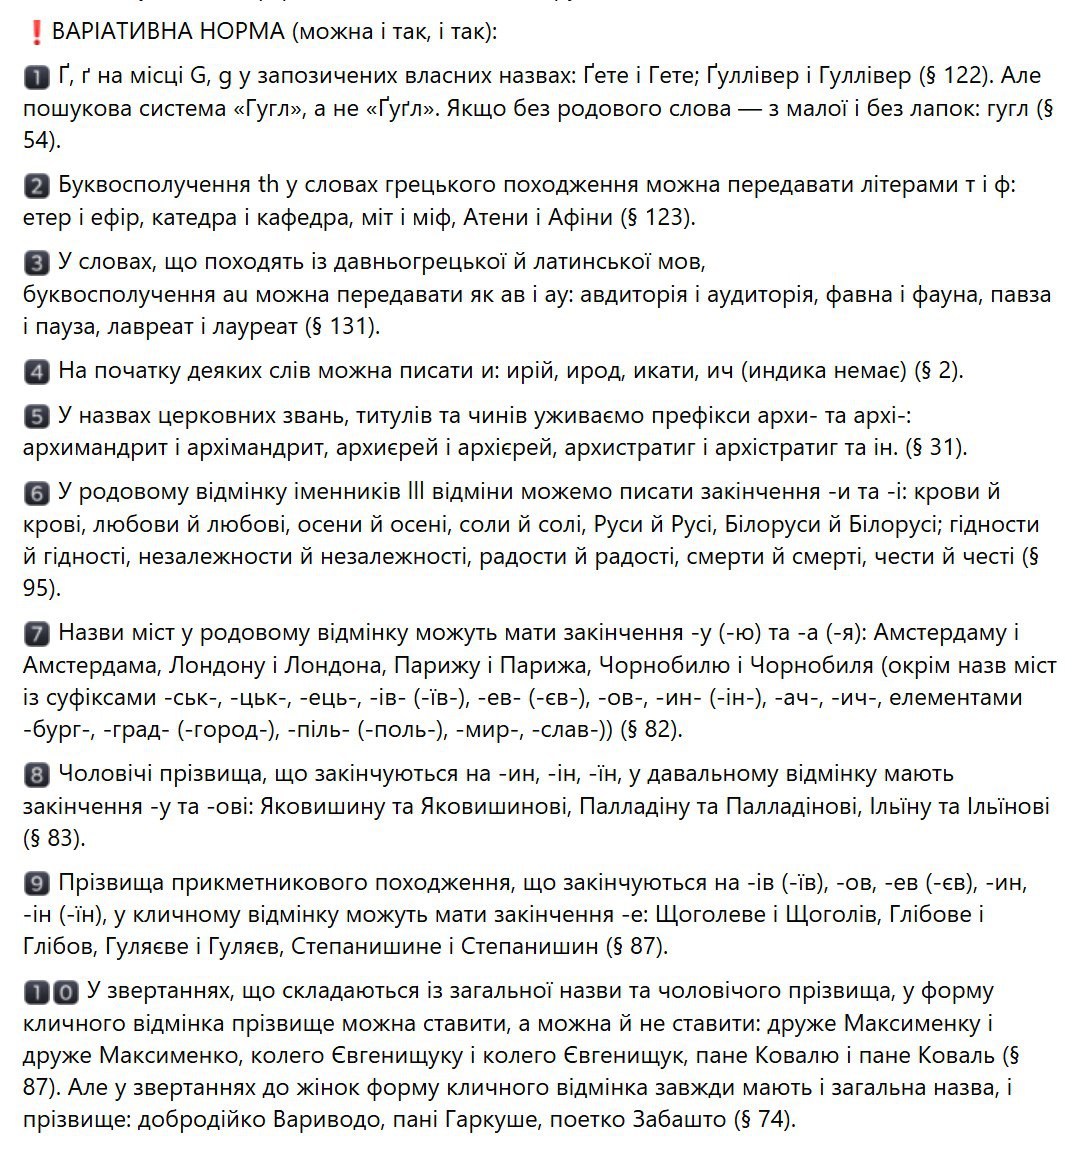 Новые правила украинского написания (ч.3). Источник - mon.gov.ua